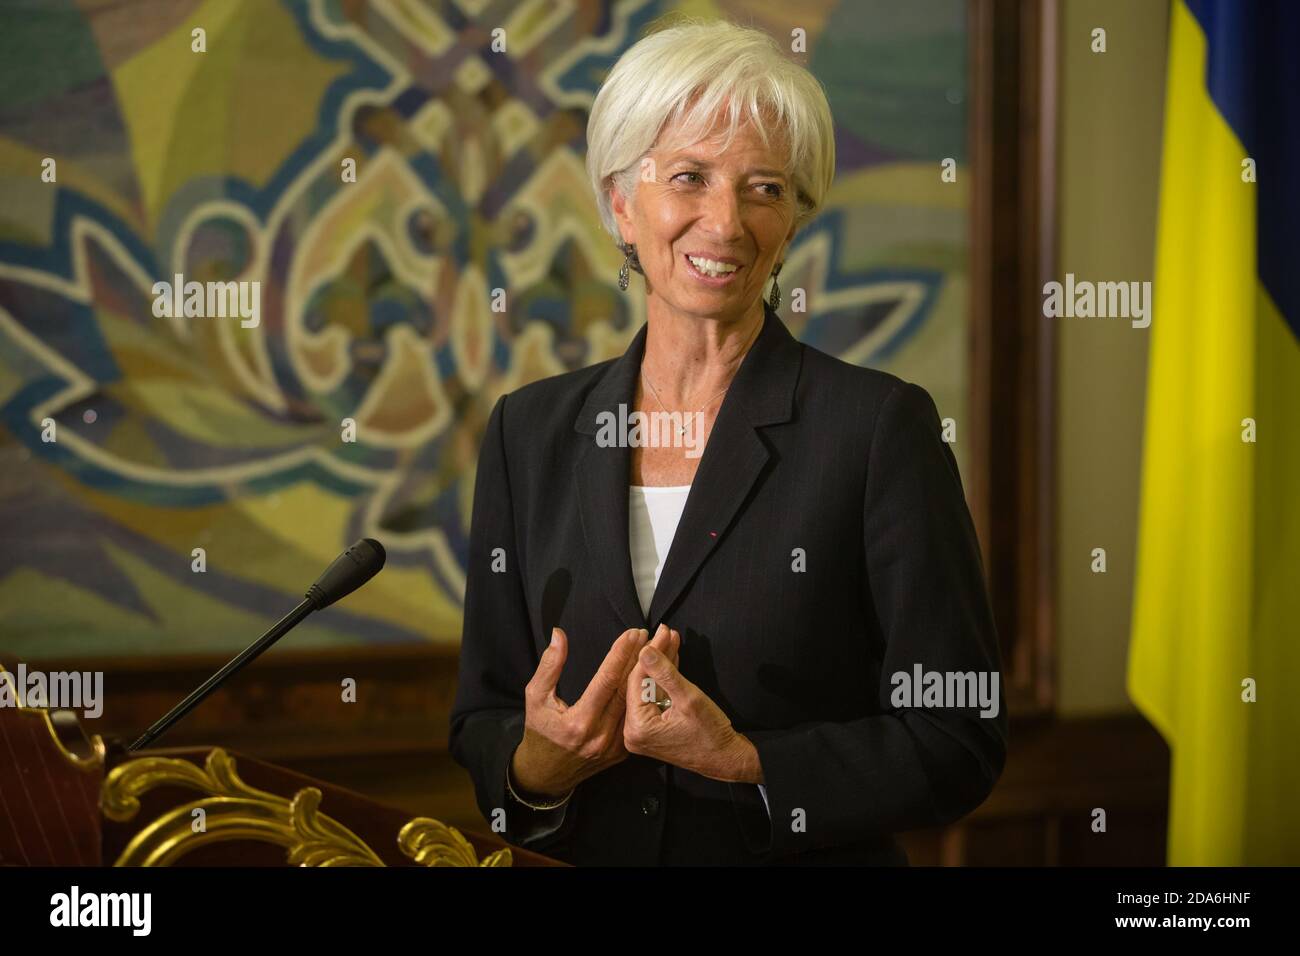 KIEW, UKRAINE - 06. Sep 2015: Geschäftsführerin des Internationalen Währungsfonds, Christine Lagarde, bei einem Treffen mit dem Präsidenten der Ukraine, Petro Poroschenko, in Kiew Stockfoto